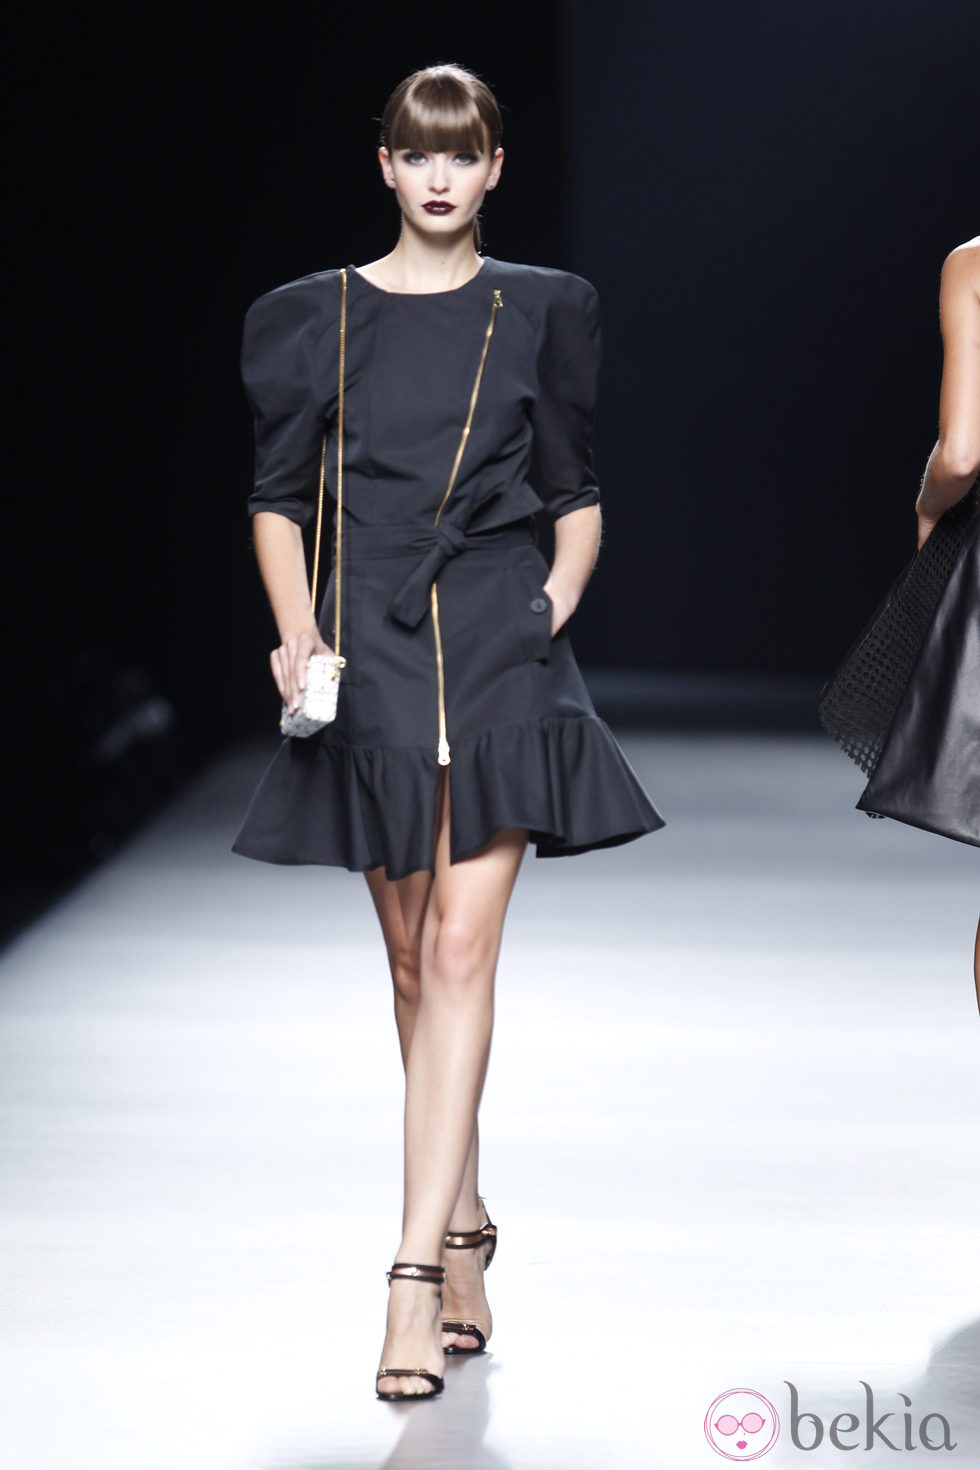 Vestido negro con cremallera y hombreras de la colección primavera-verano 2013 de Juanjo Oliva